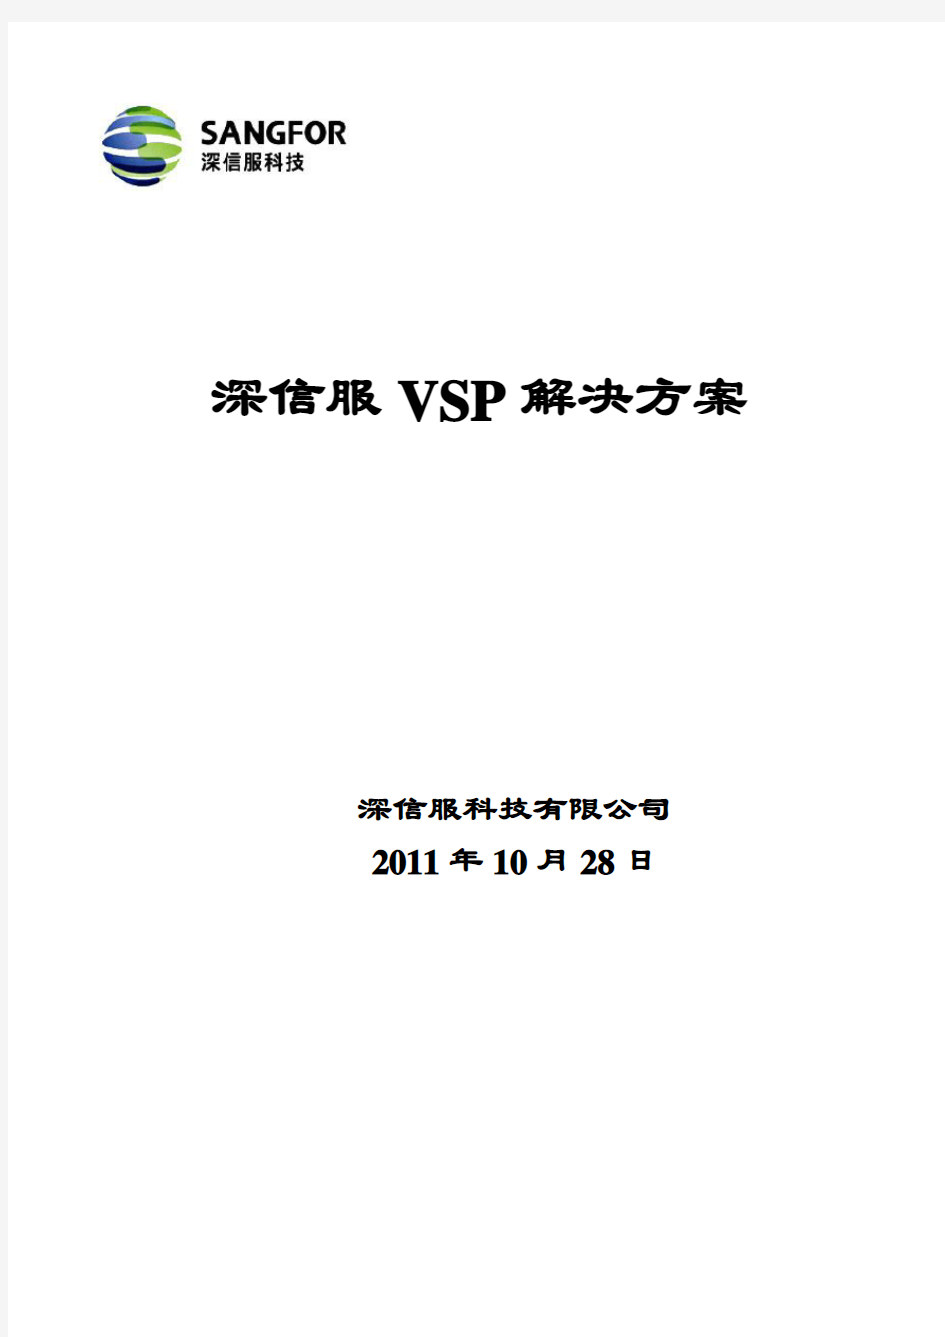 深信服VSP解决方案-201111